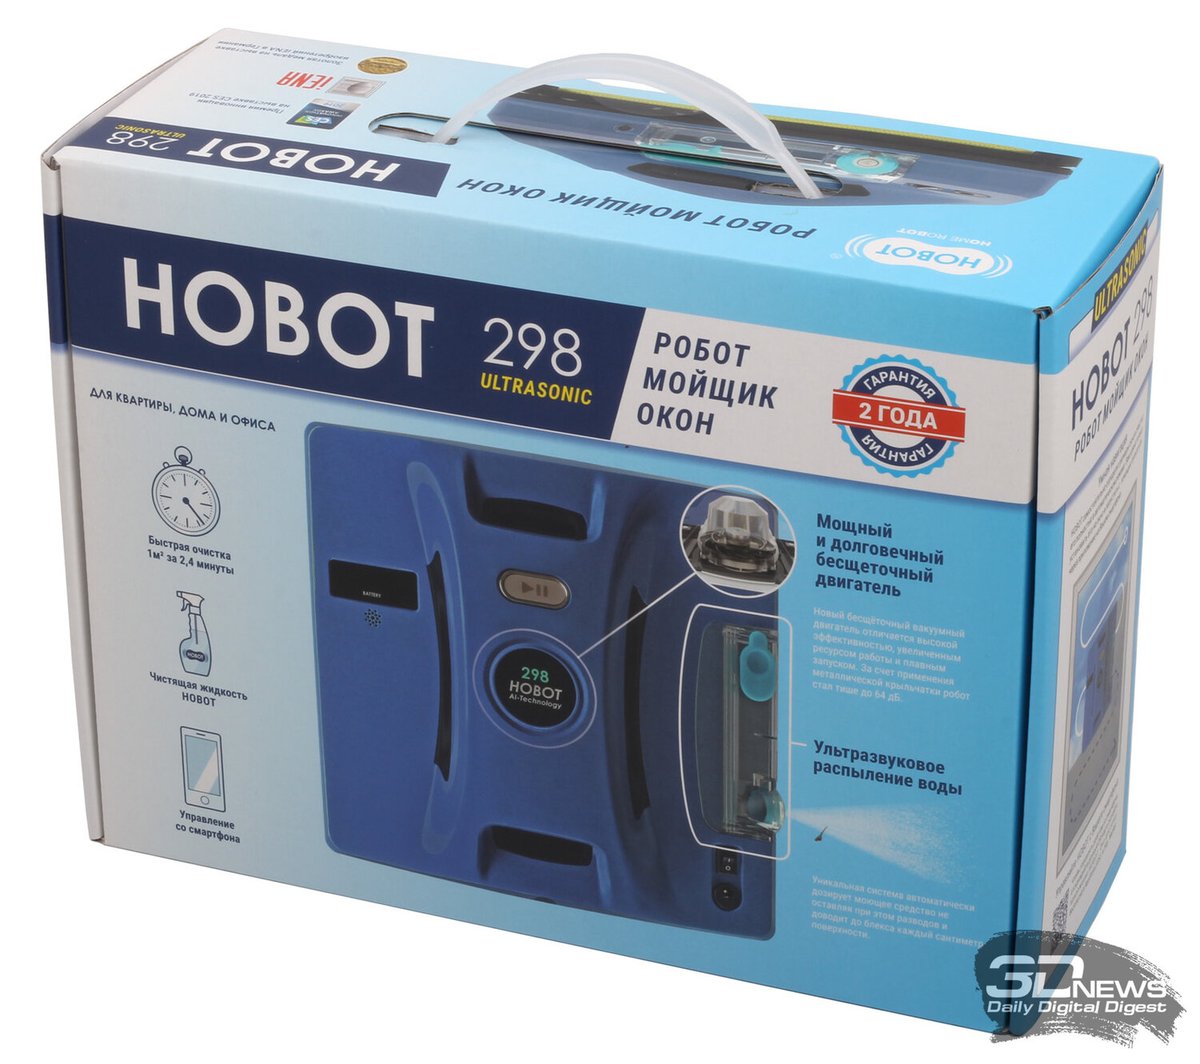 Мойщик окон hobot 298. Hobot 298 Ultrasonic. Робот Hobot 298. Мойщик окон Hobot. Hobot 388 Ultrasonic на окне.